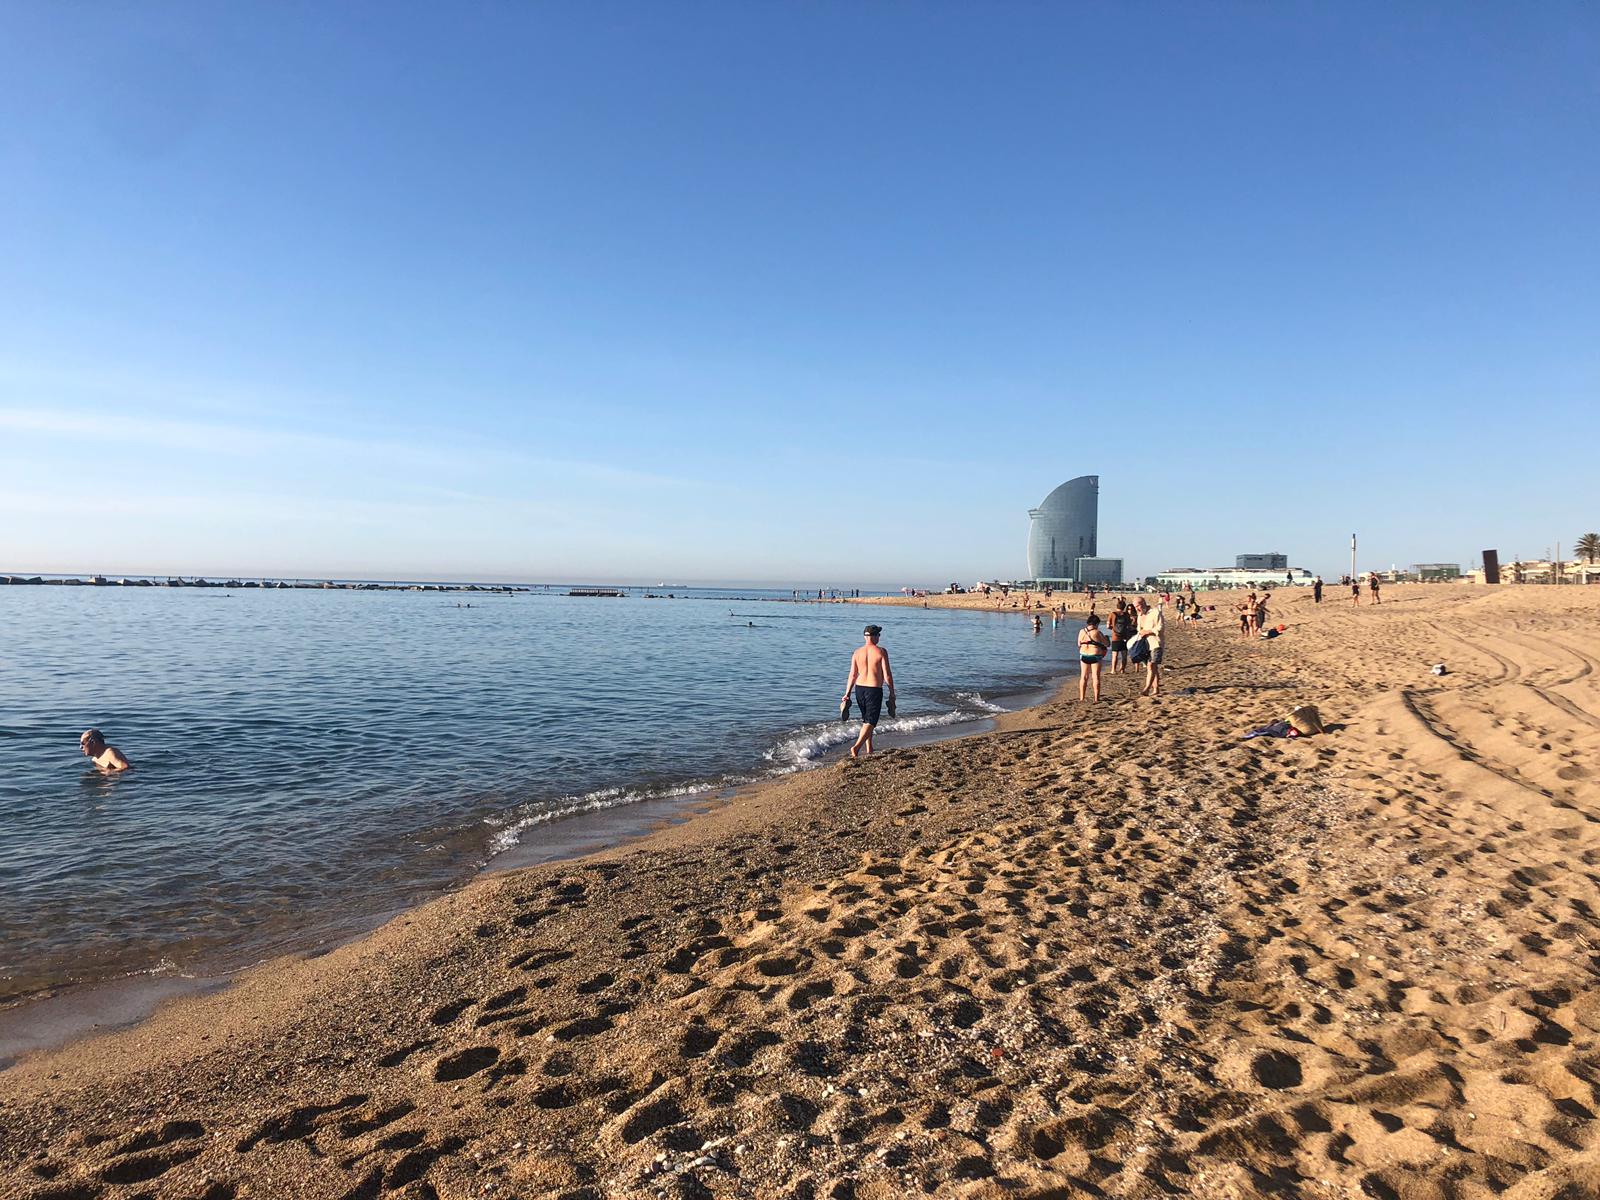 Aproves el control per càmera de l'accés a la platja de Barcelona?